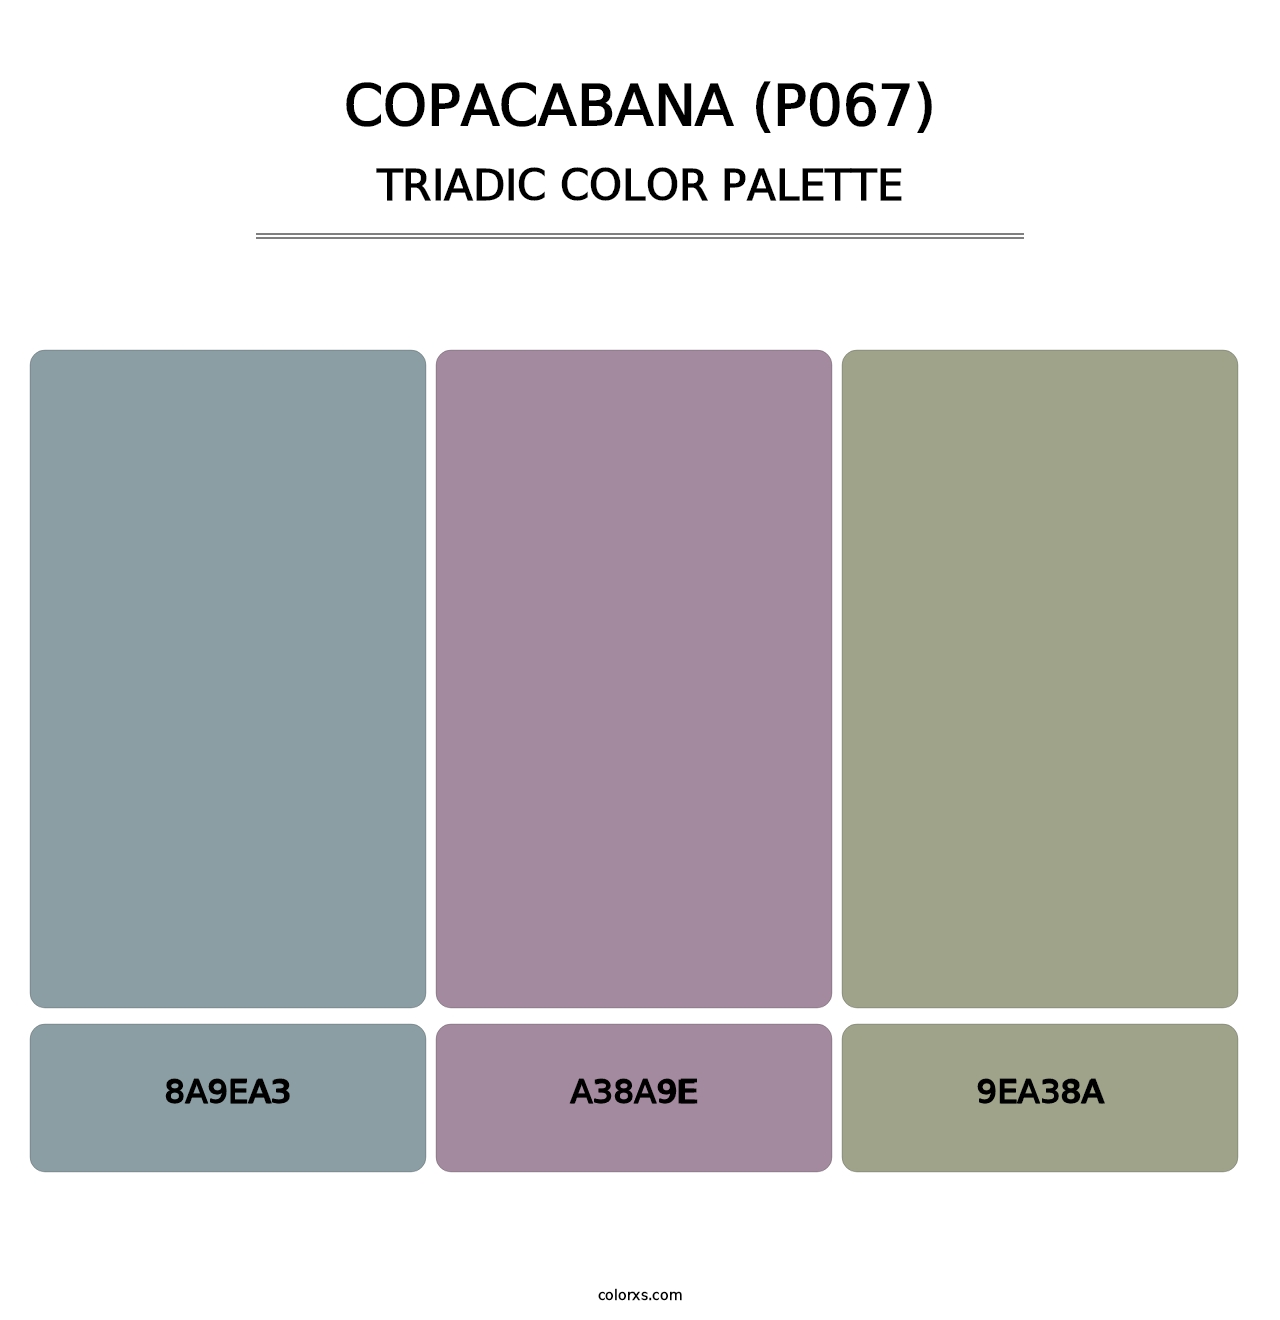 Copacabana (P067) - Triadic Color Palette